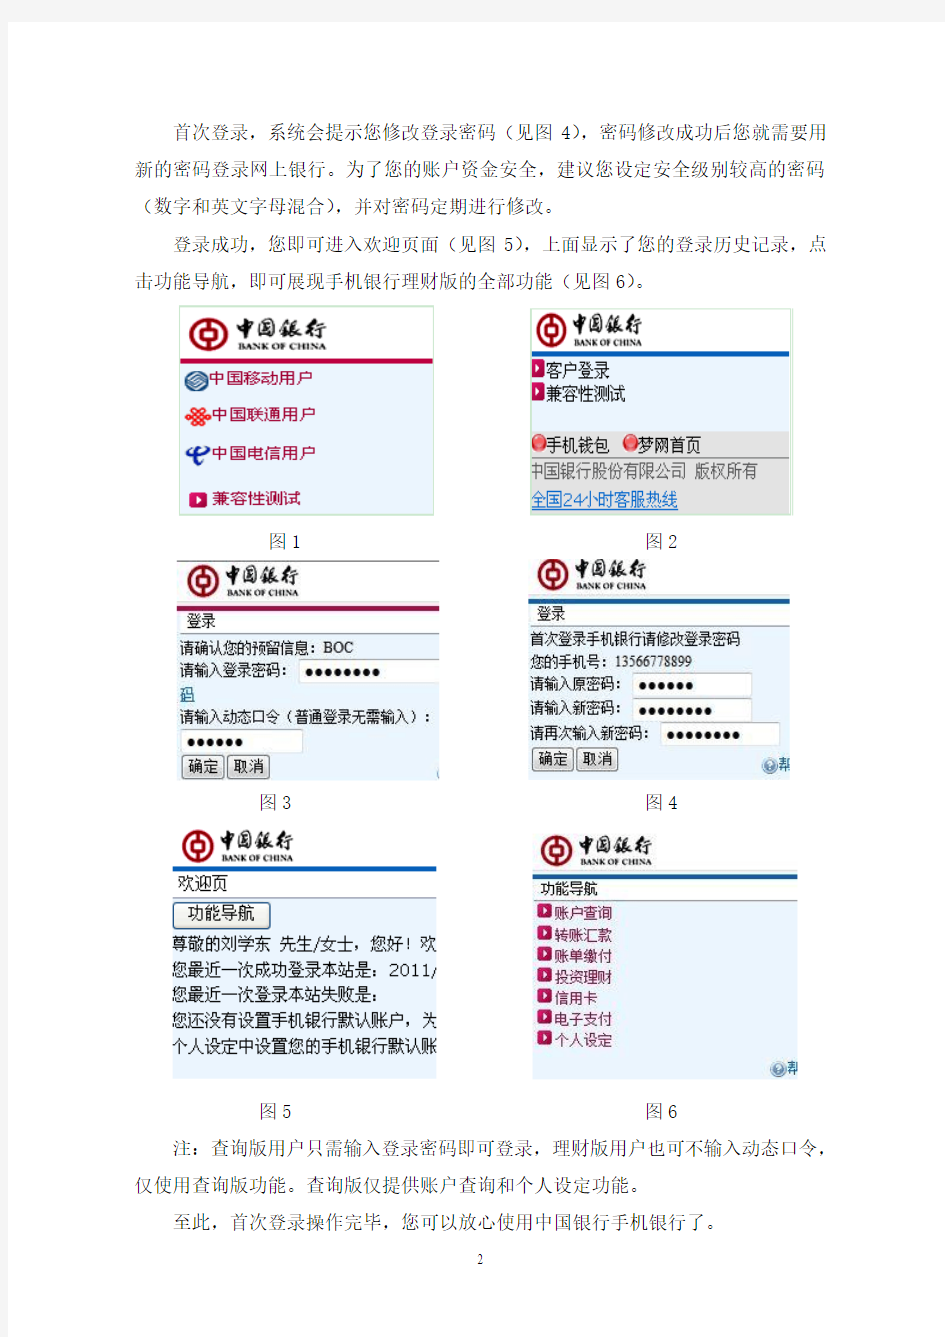 中国银行手机银行首次登录指引-20100220